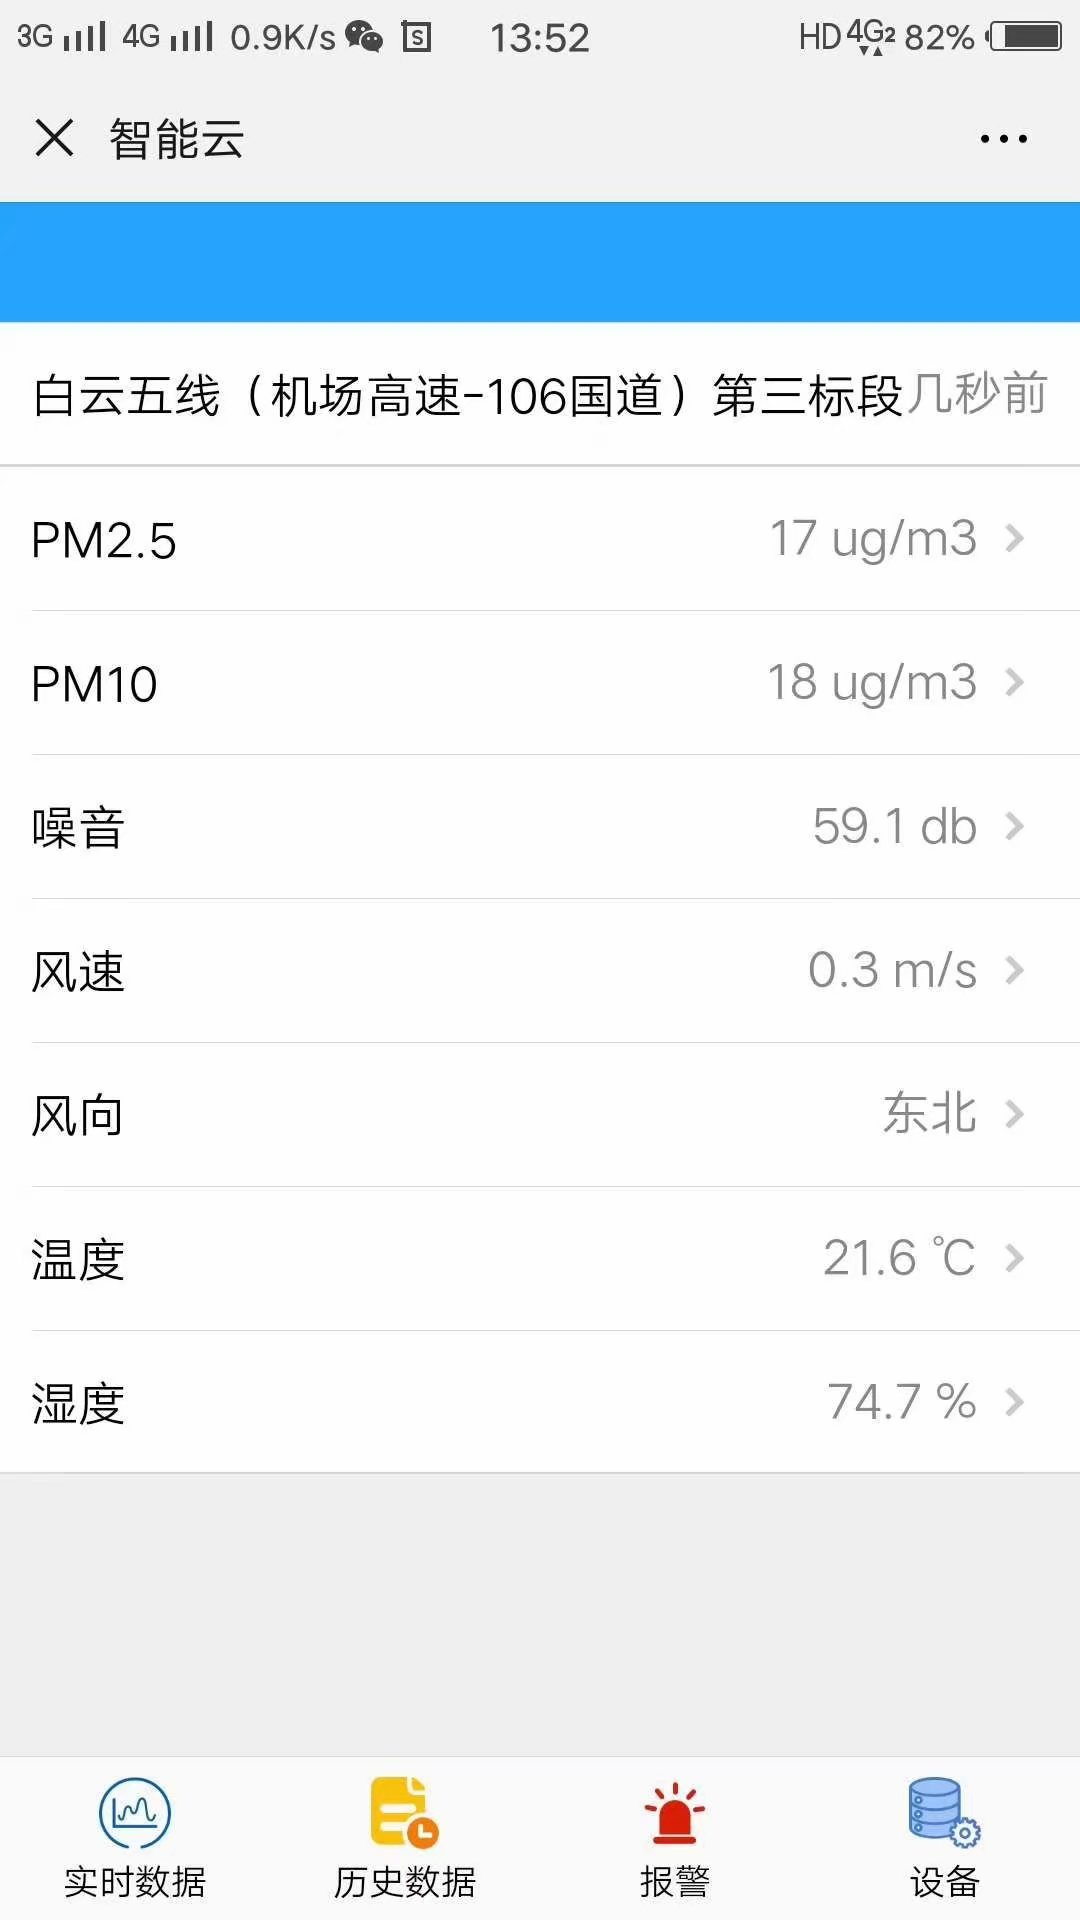 江苏南京工地扬尘检测系统PM2.5粉尘监测仪